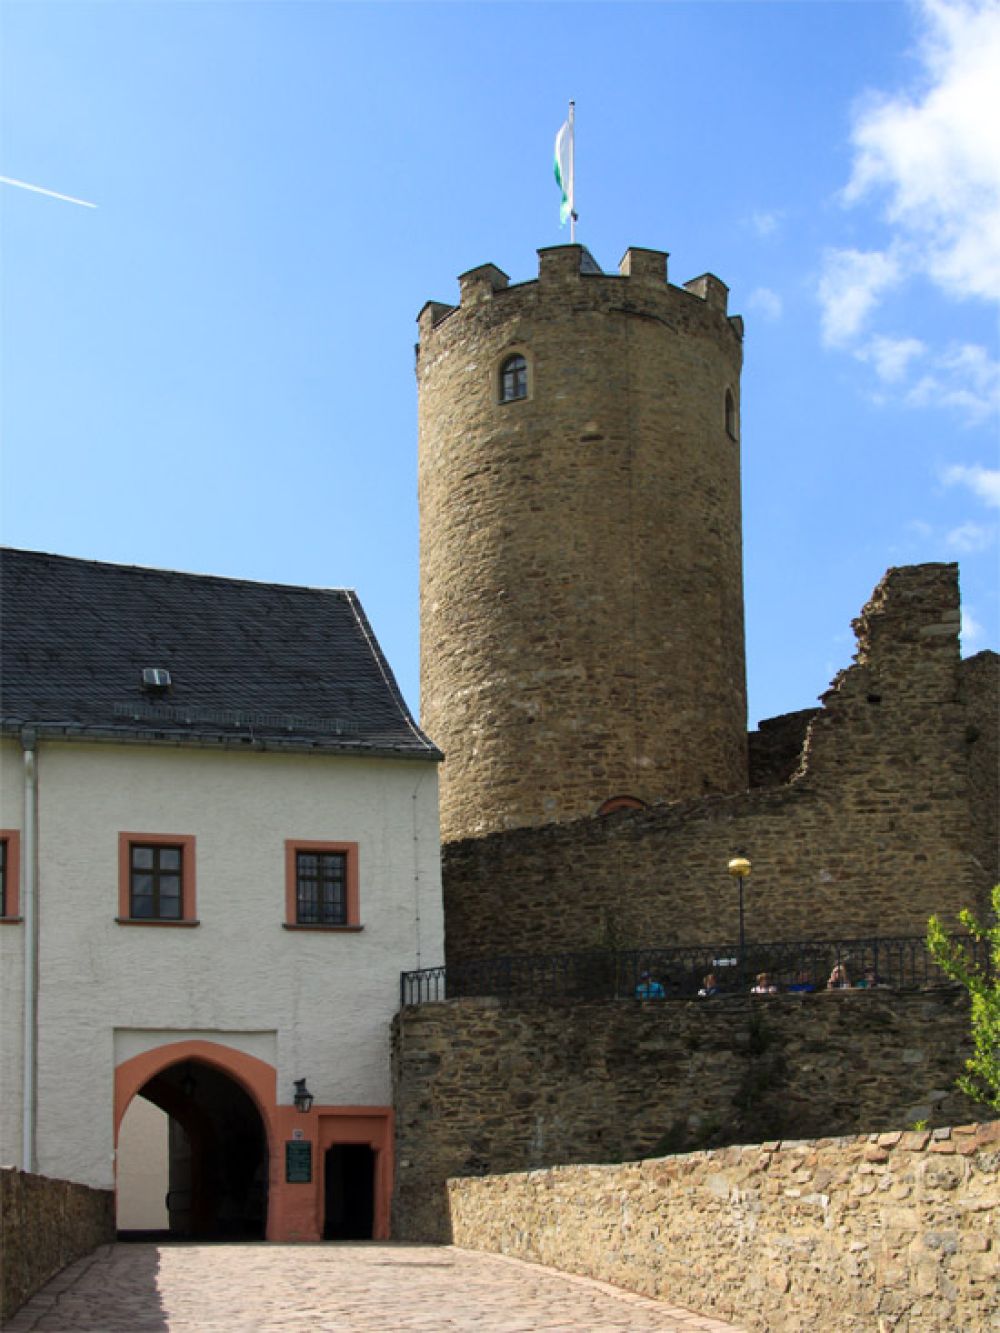 Burghof mit Bergfried - ältesten Bauwerk der Burganlage